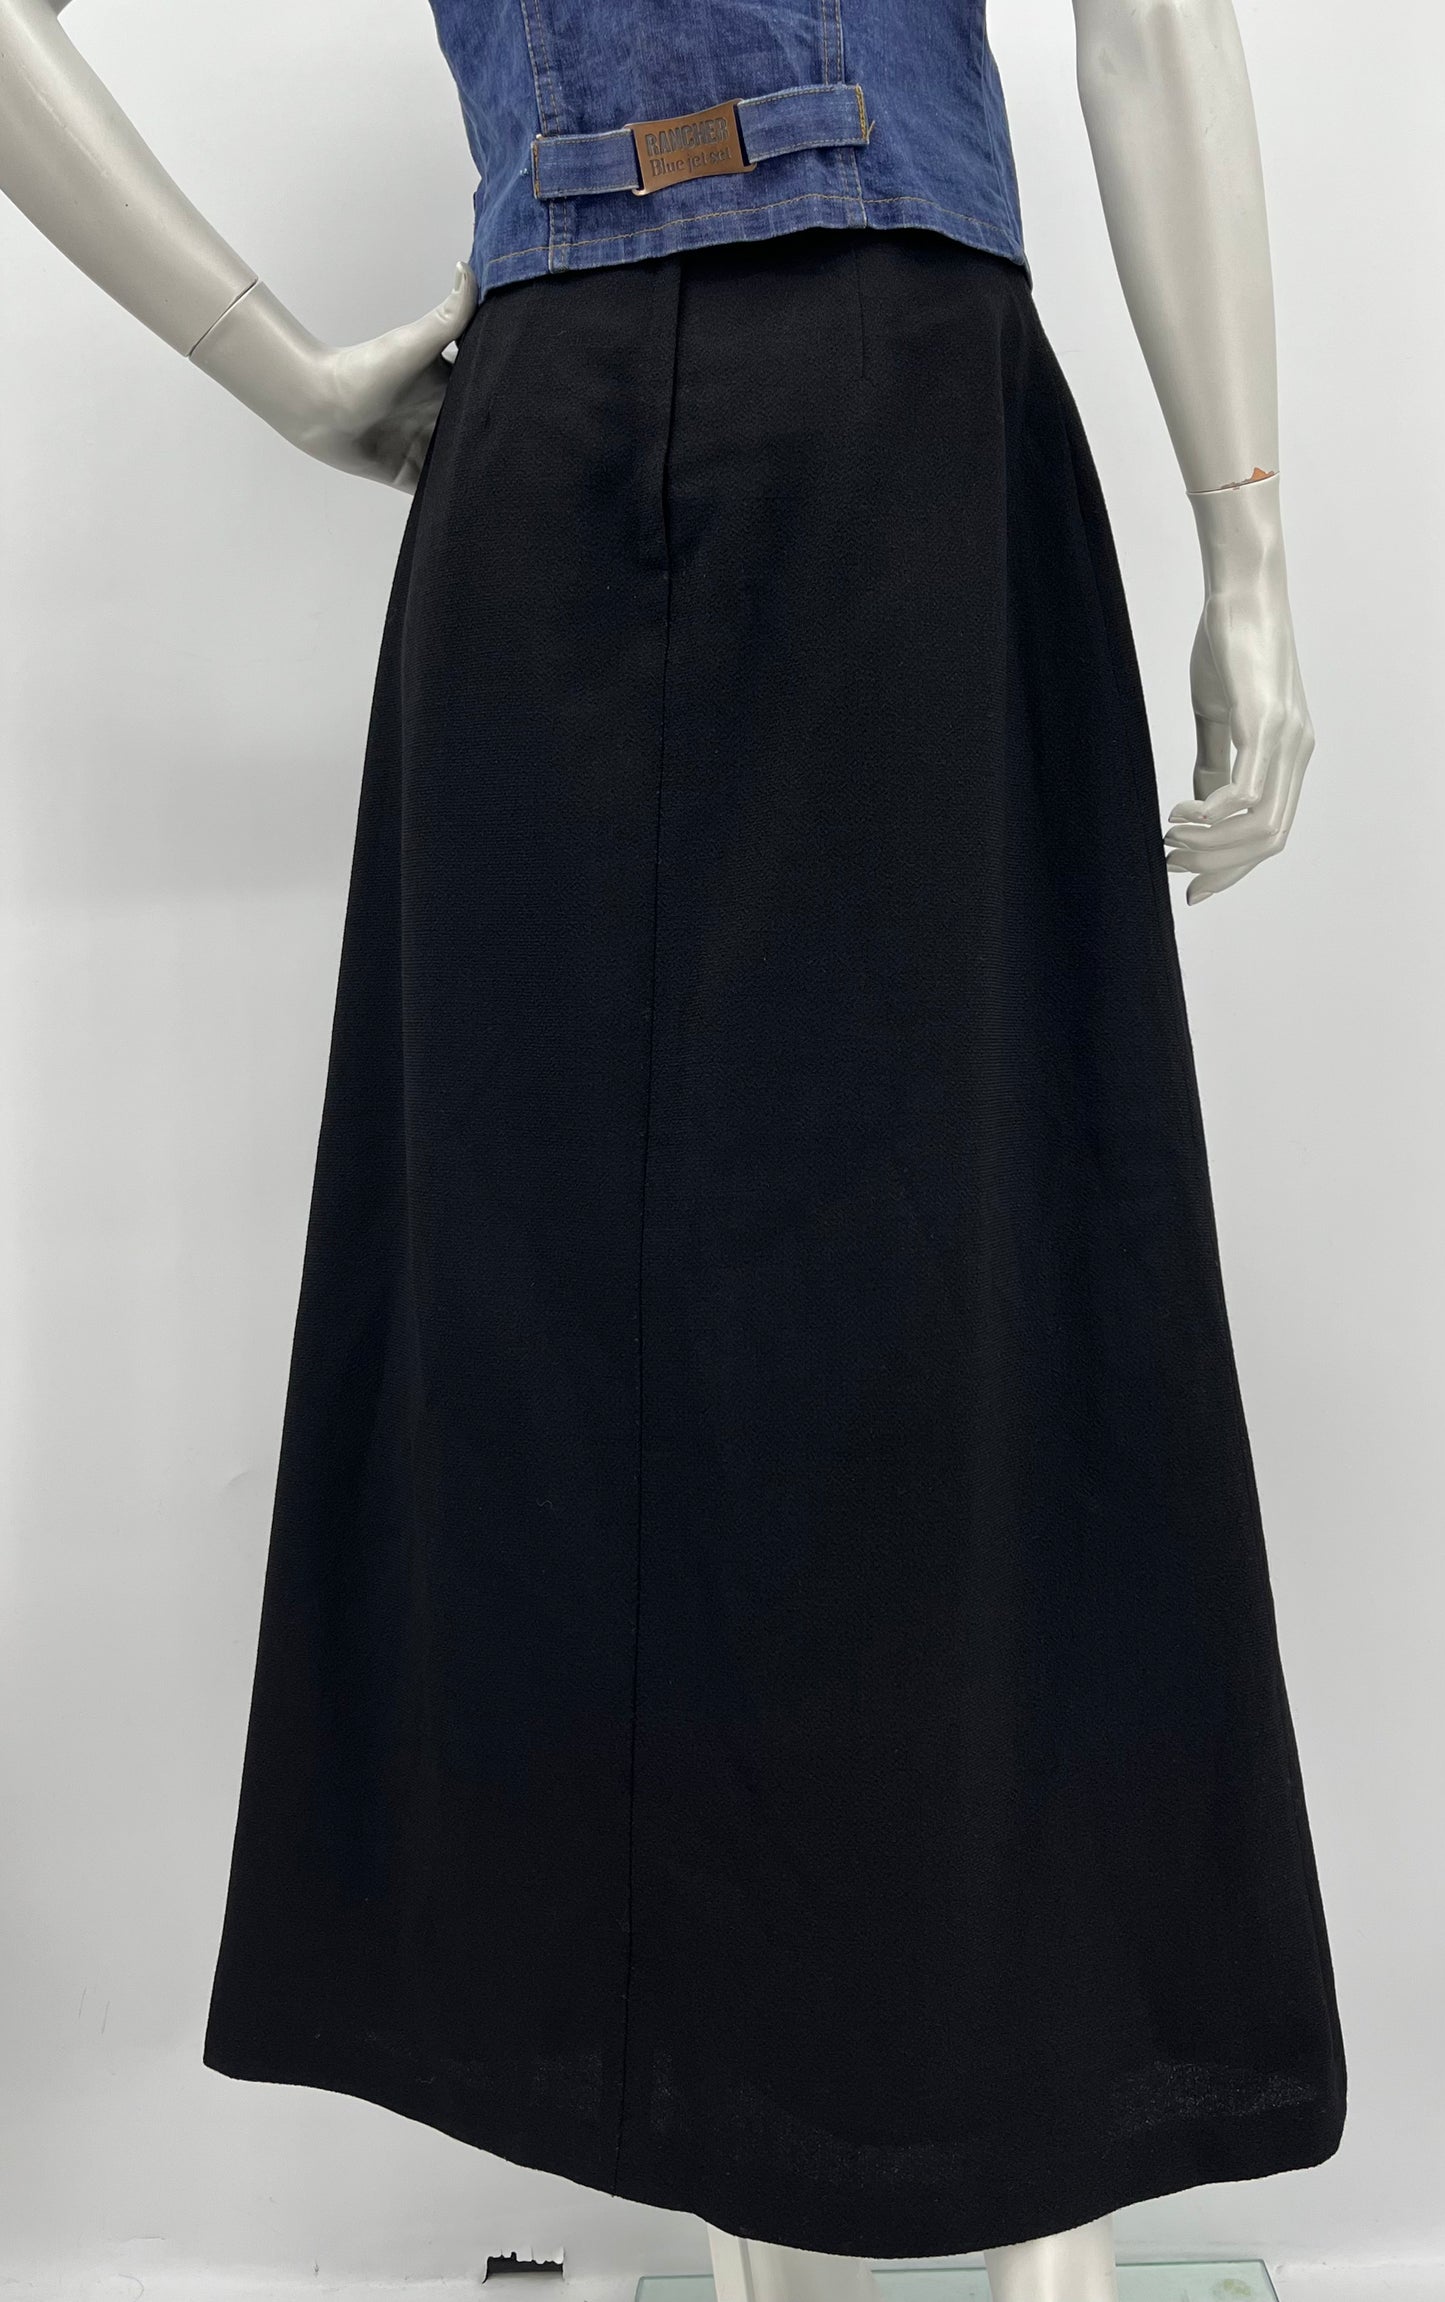 Musta A-linjainen maxihame, 80-90-luku, vyöt.ymp. 66cm, kokoarvio 34